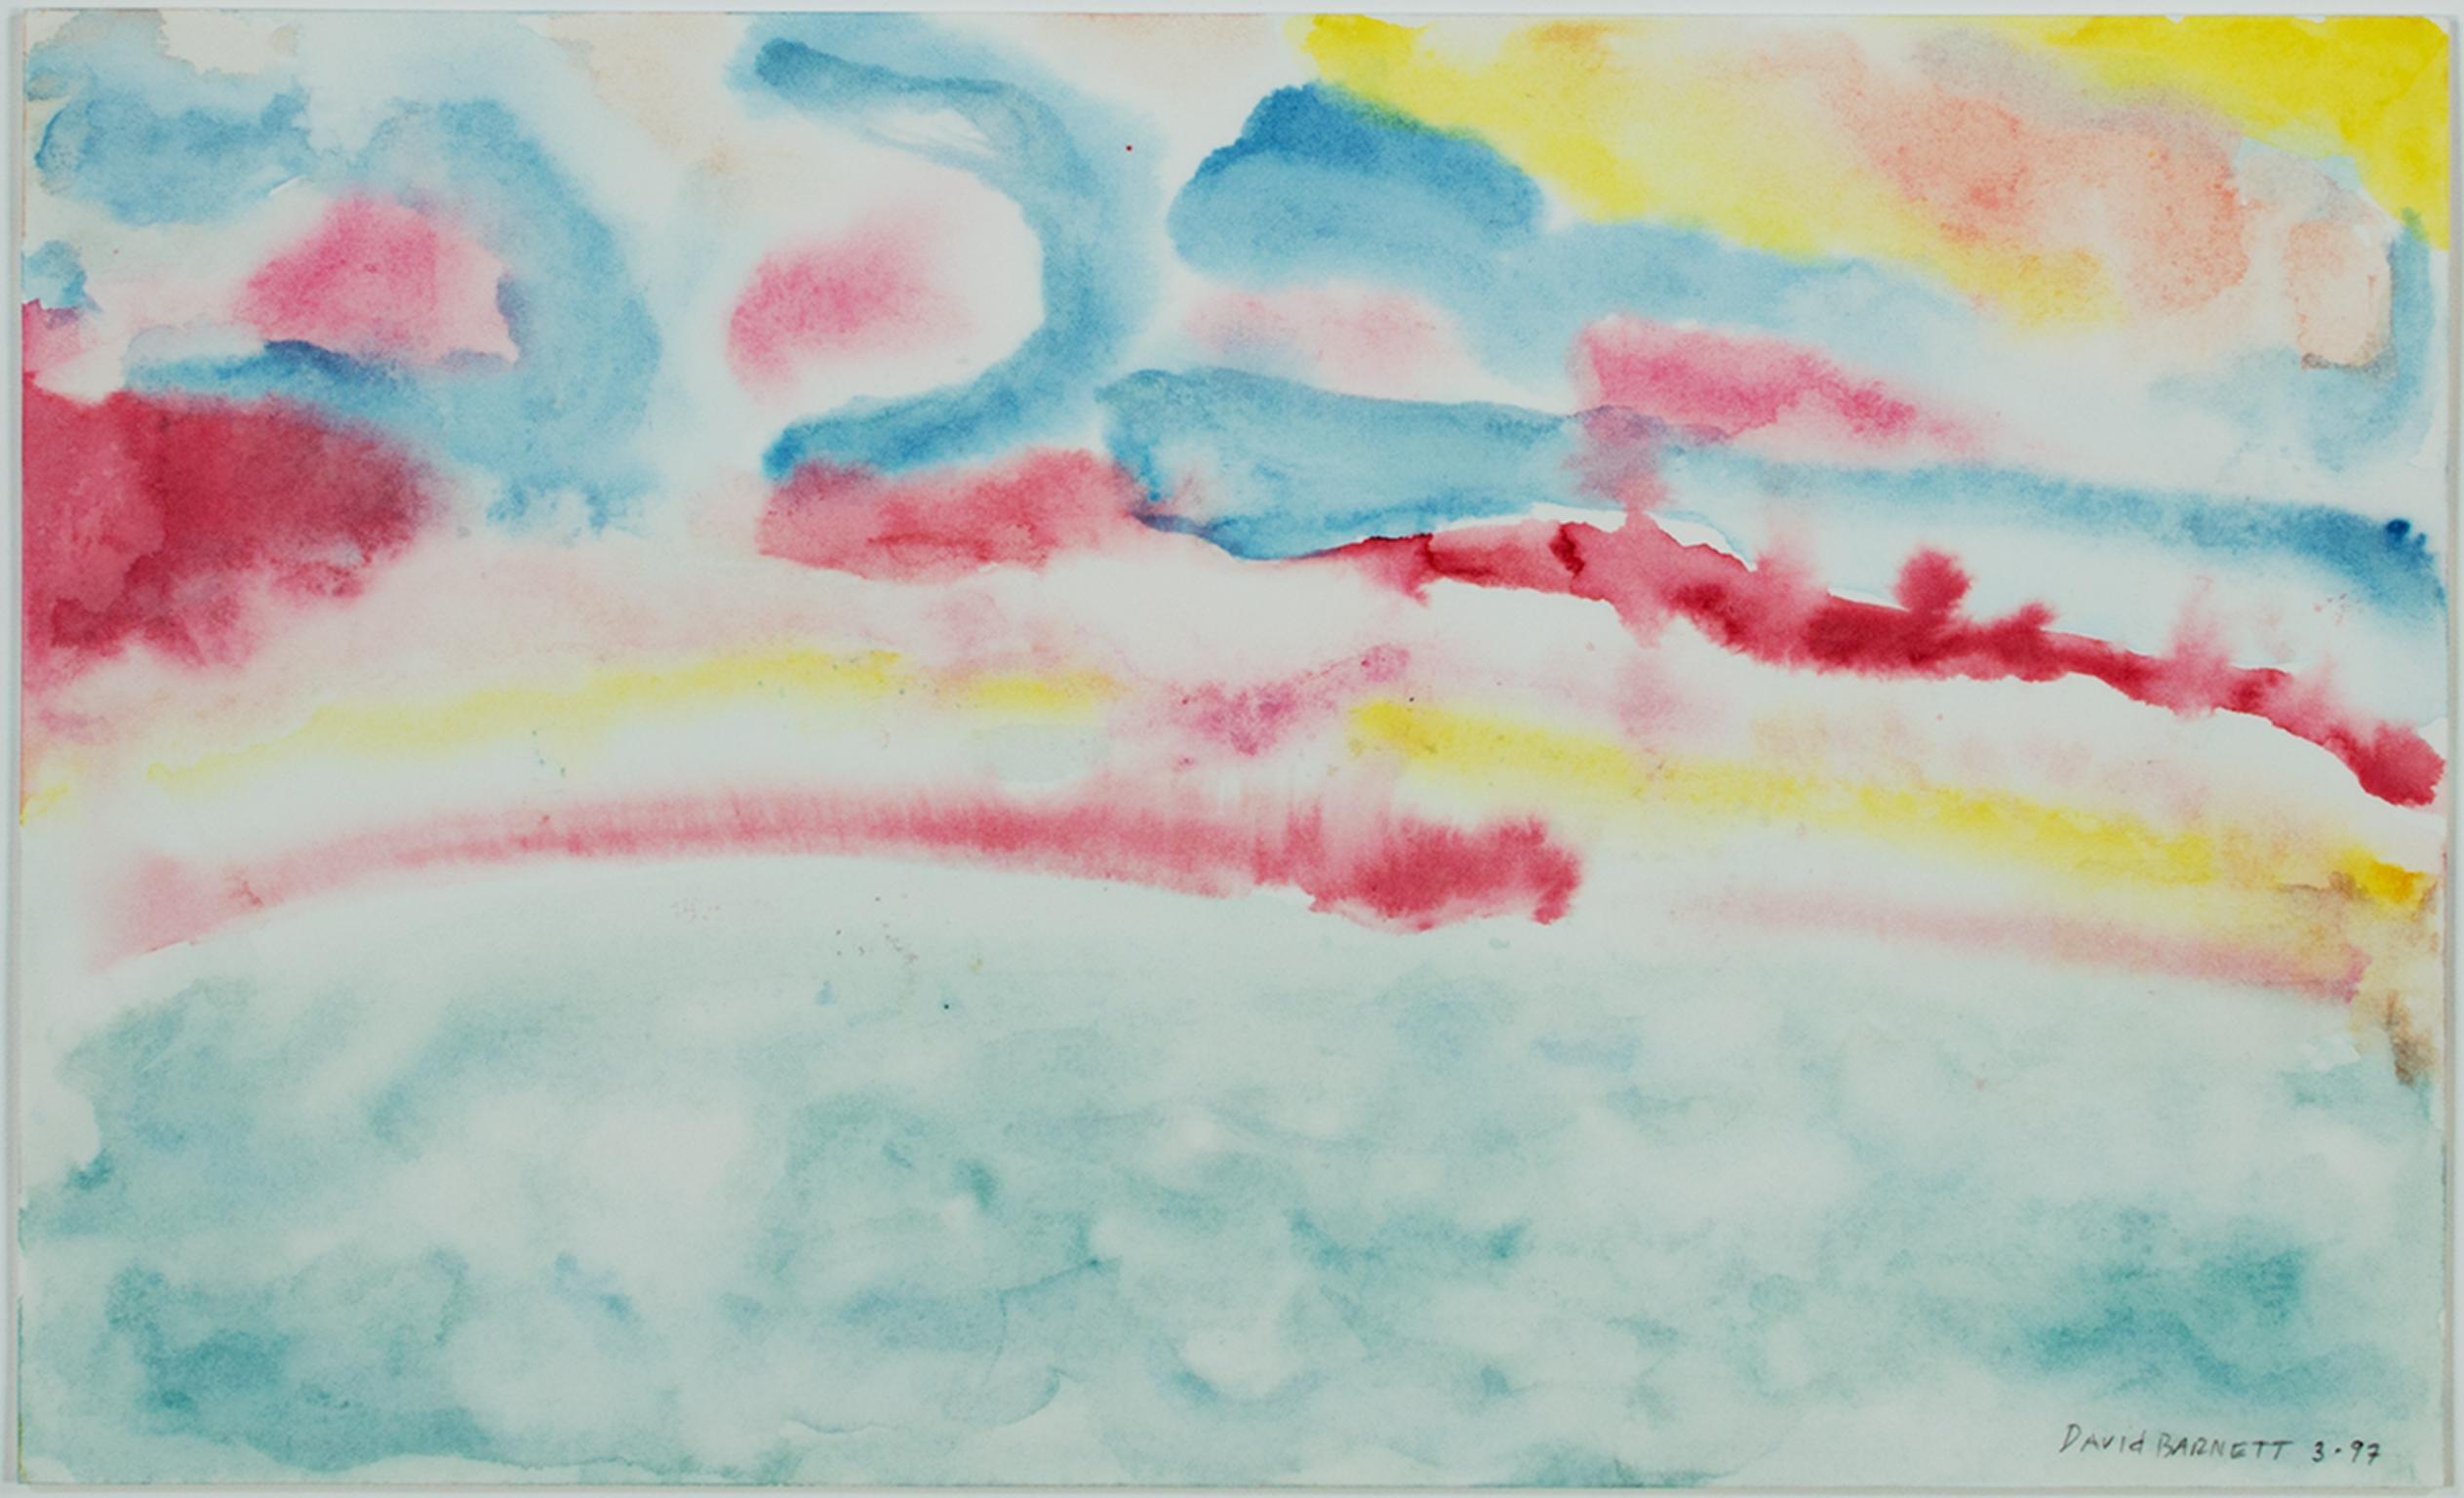 "Beaver Lake Sunrise IV" est une aquarelle originale sur papier de David Barnett, signée dans le coin inférieur droit. Cette œuvre abstraite présente des bandes lumineuses de couleurs primaires représentant le ciel au-dessus d'un lac bleu-vert